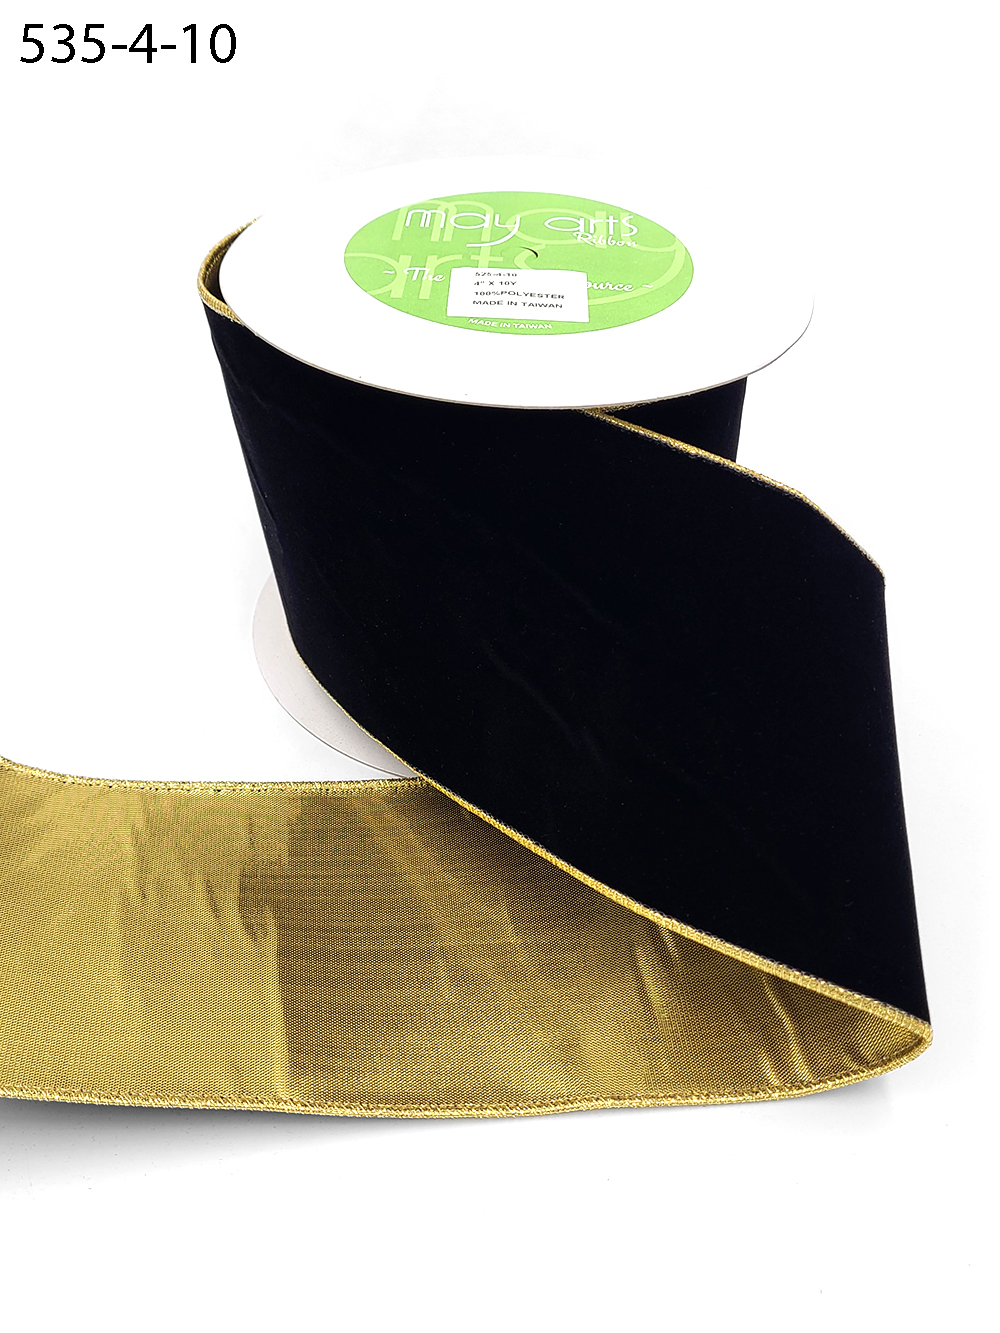 Black Gold Edge Velvet Ribbon - 11 Yard Roll, Black Gold Edge